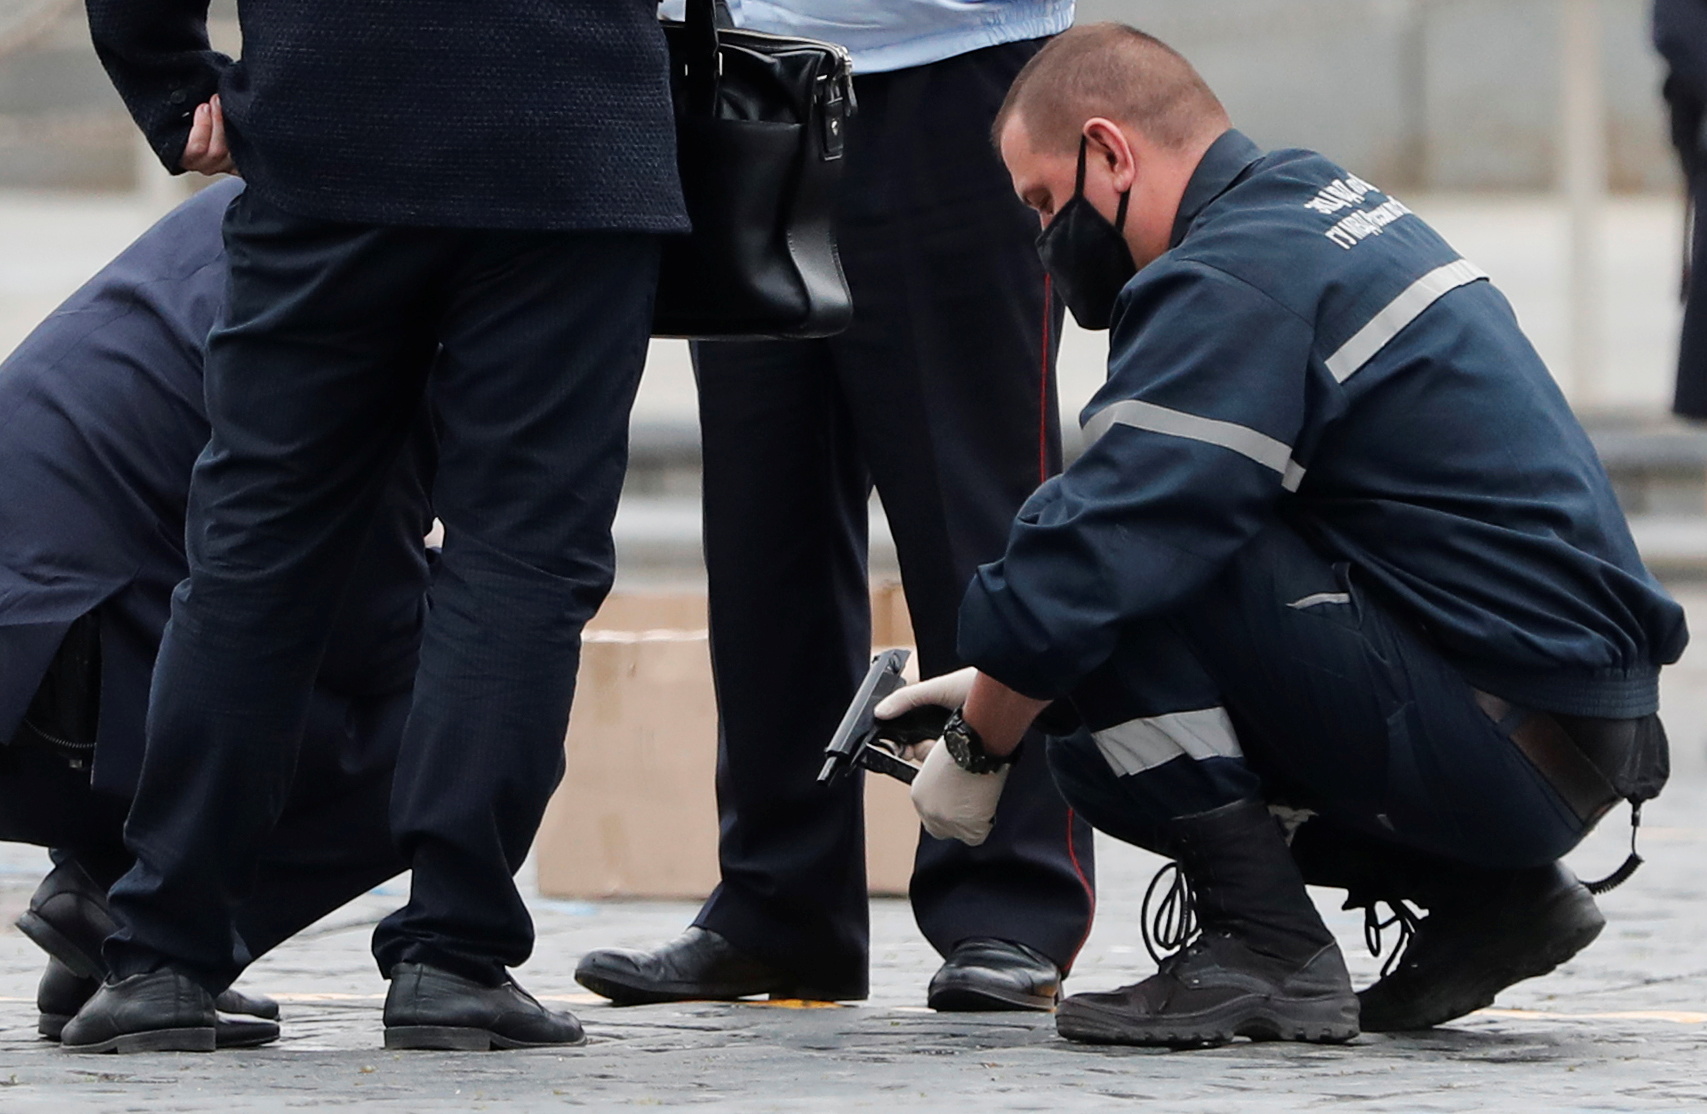 Сотрудники полиции изучают пистолет, предположительно, использовавшийся художником Павлом Крисевичем во время его перформанса на Красной площади. Фото REUTERS/Shamil Zhumatov/Scanpix/Leta.